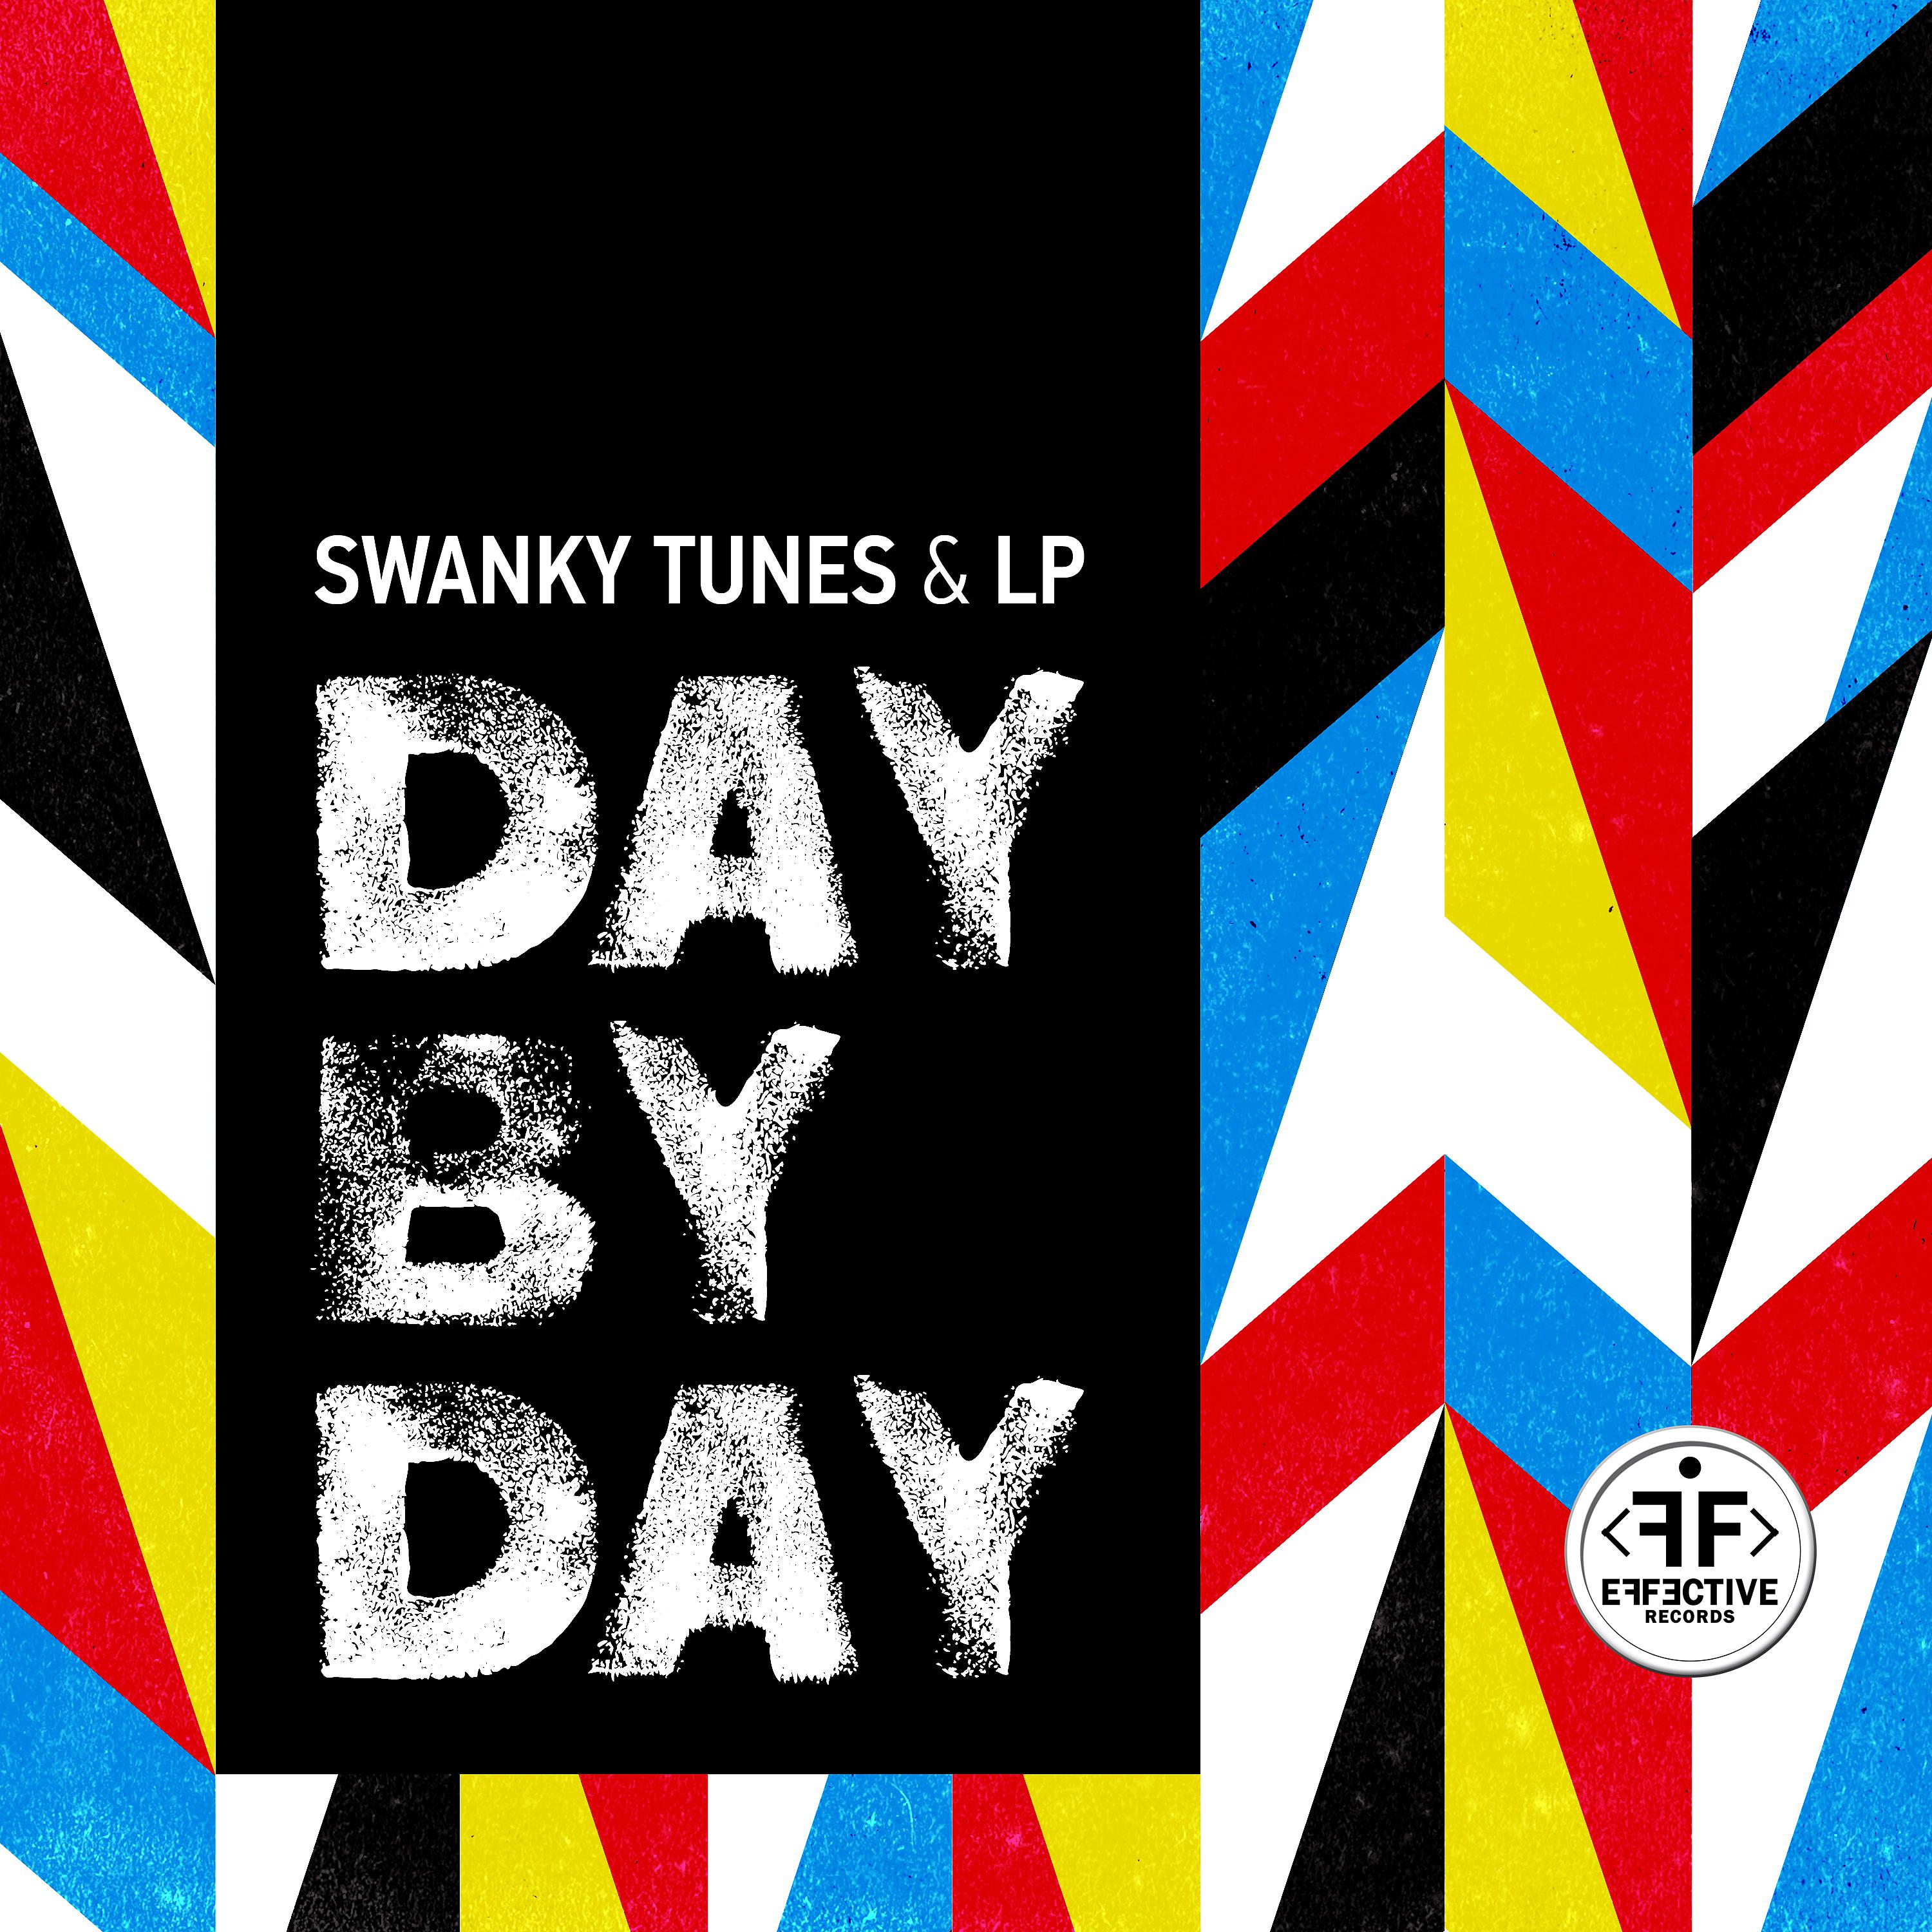 Tunes lp. Swanky Tunes LP. Swanky Tunes & LP - Day by Day. Day by Day обложка. Сванки Тюнс дей бай дей.